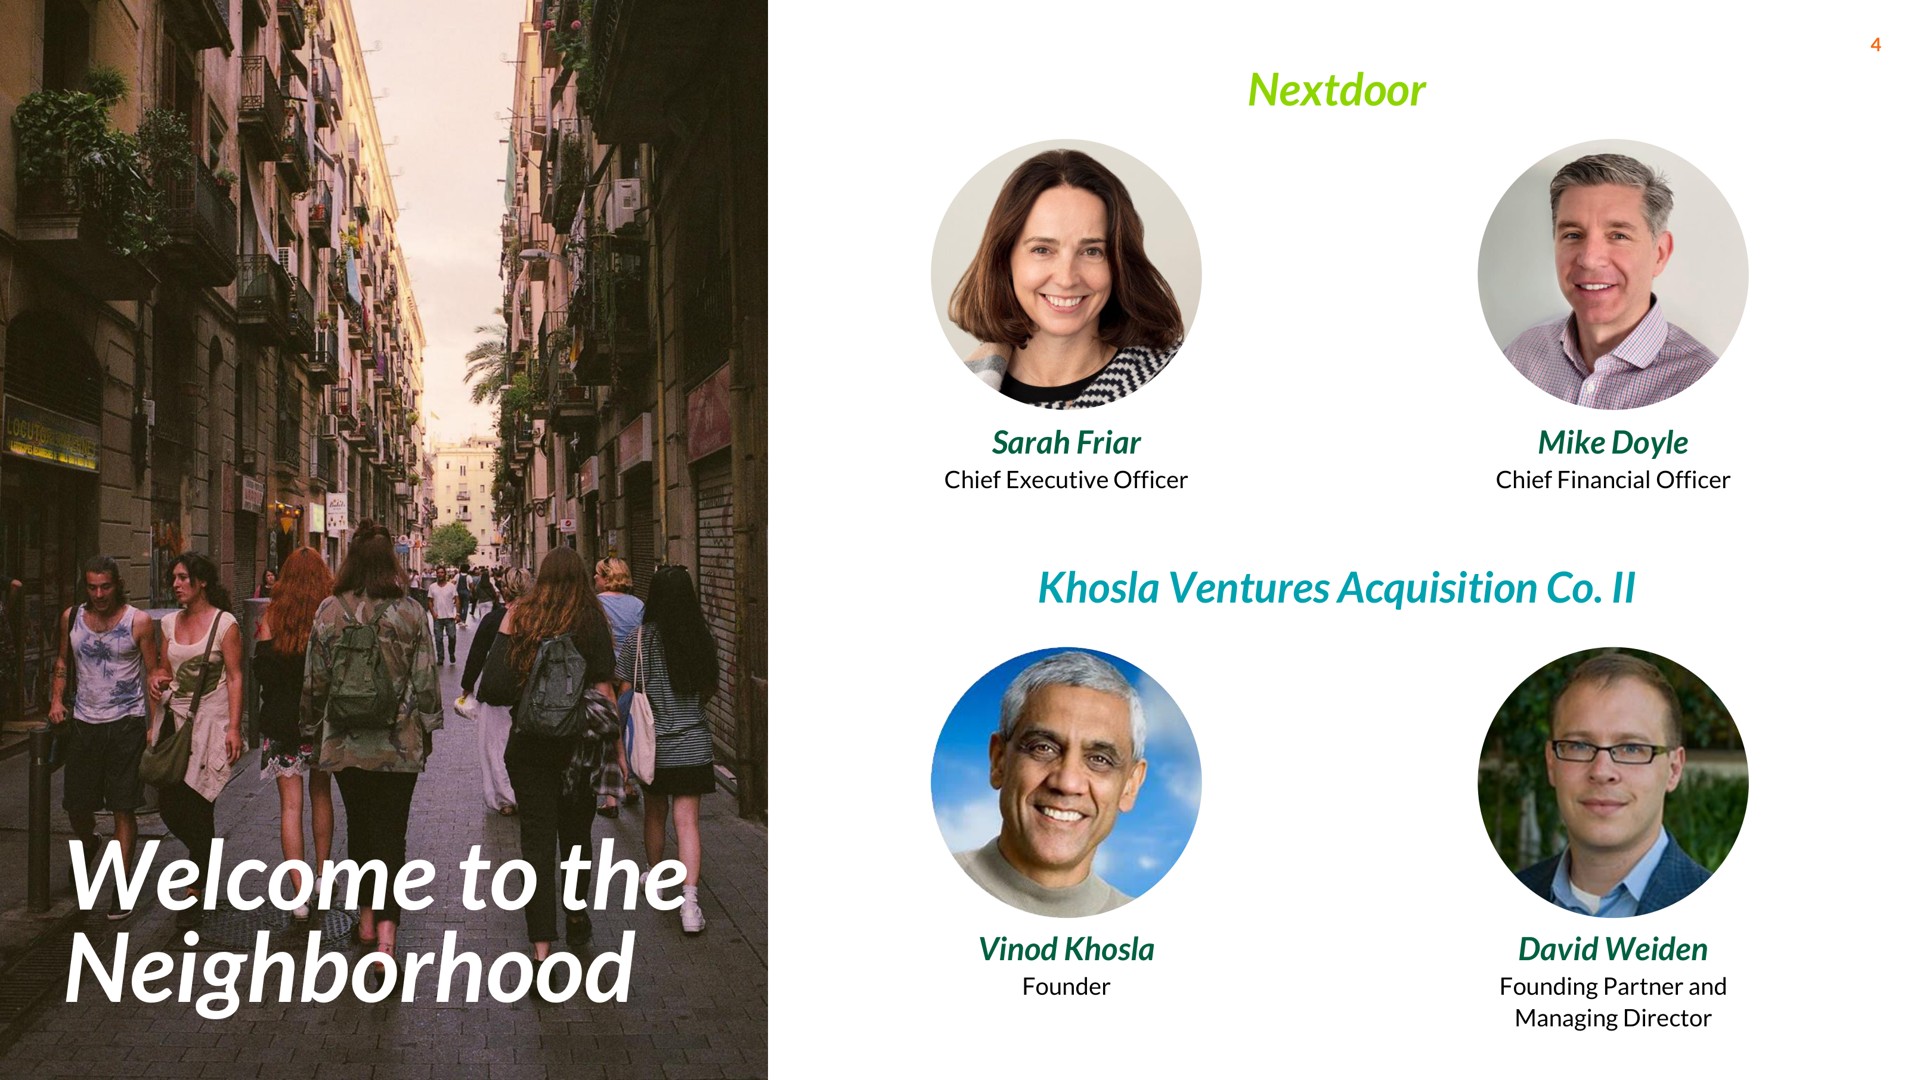 welcome to the neighborhood | Nextdoor